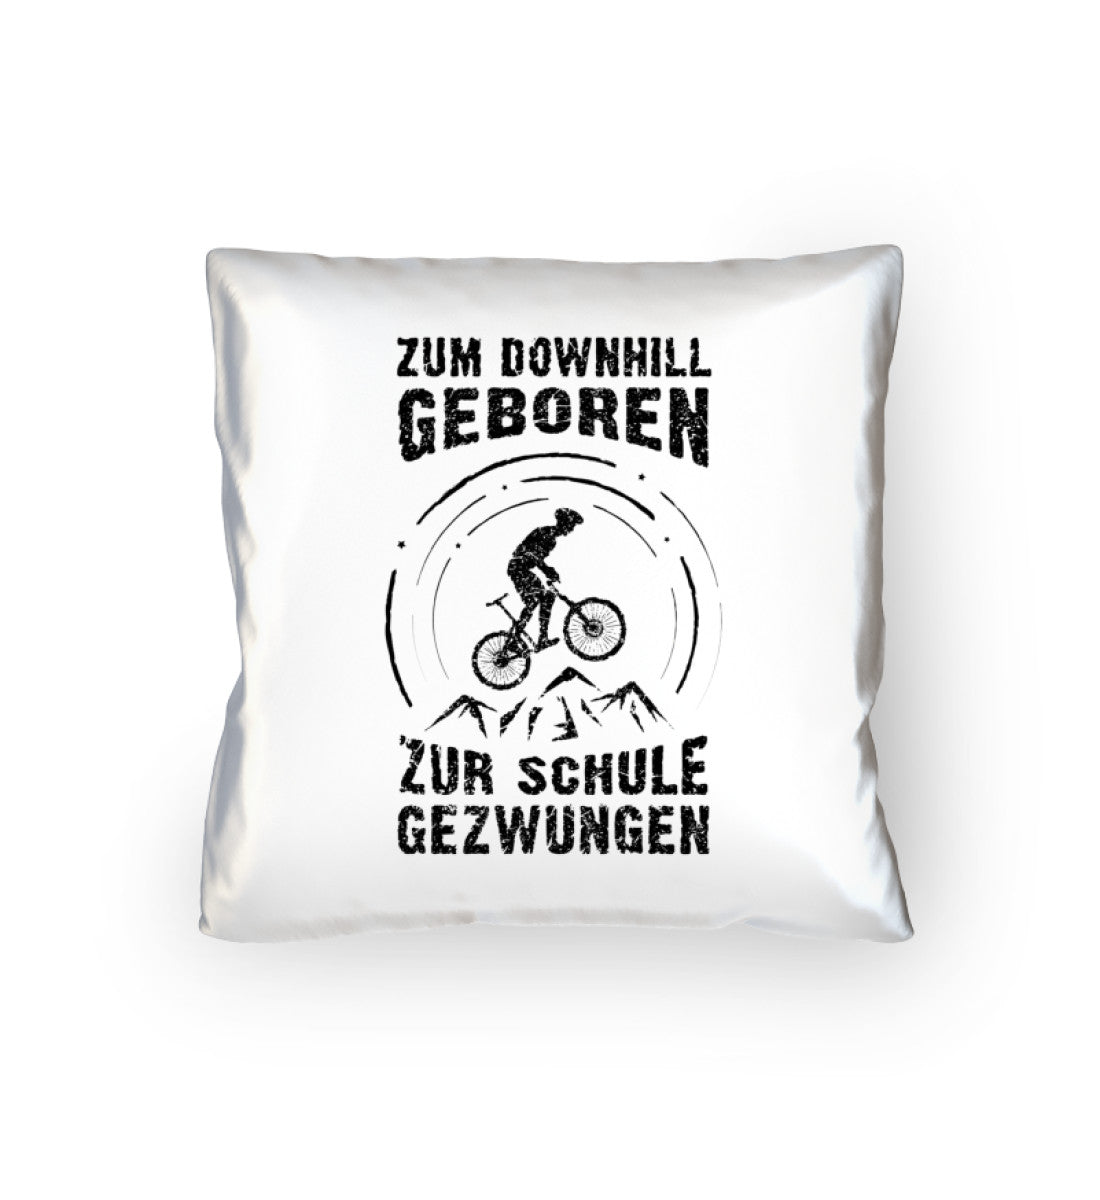 Zum Downhill geboren - Kissen (40x40cm) mountainbike Default Title